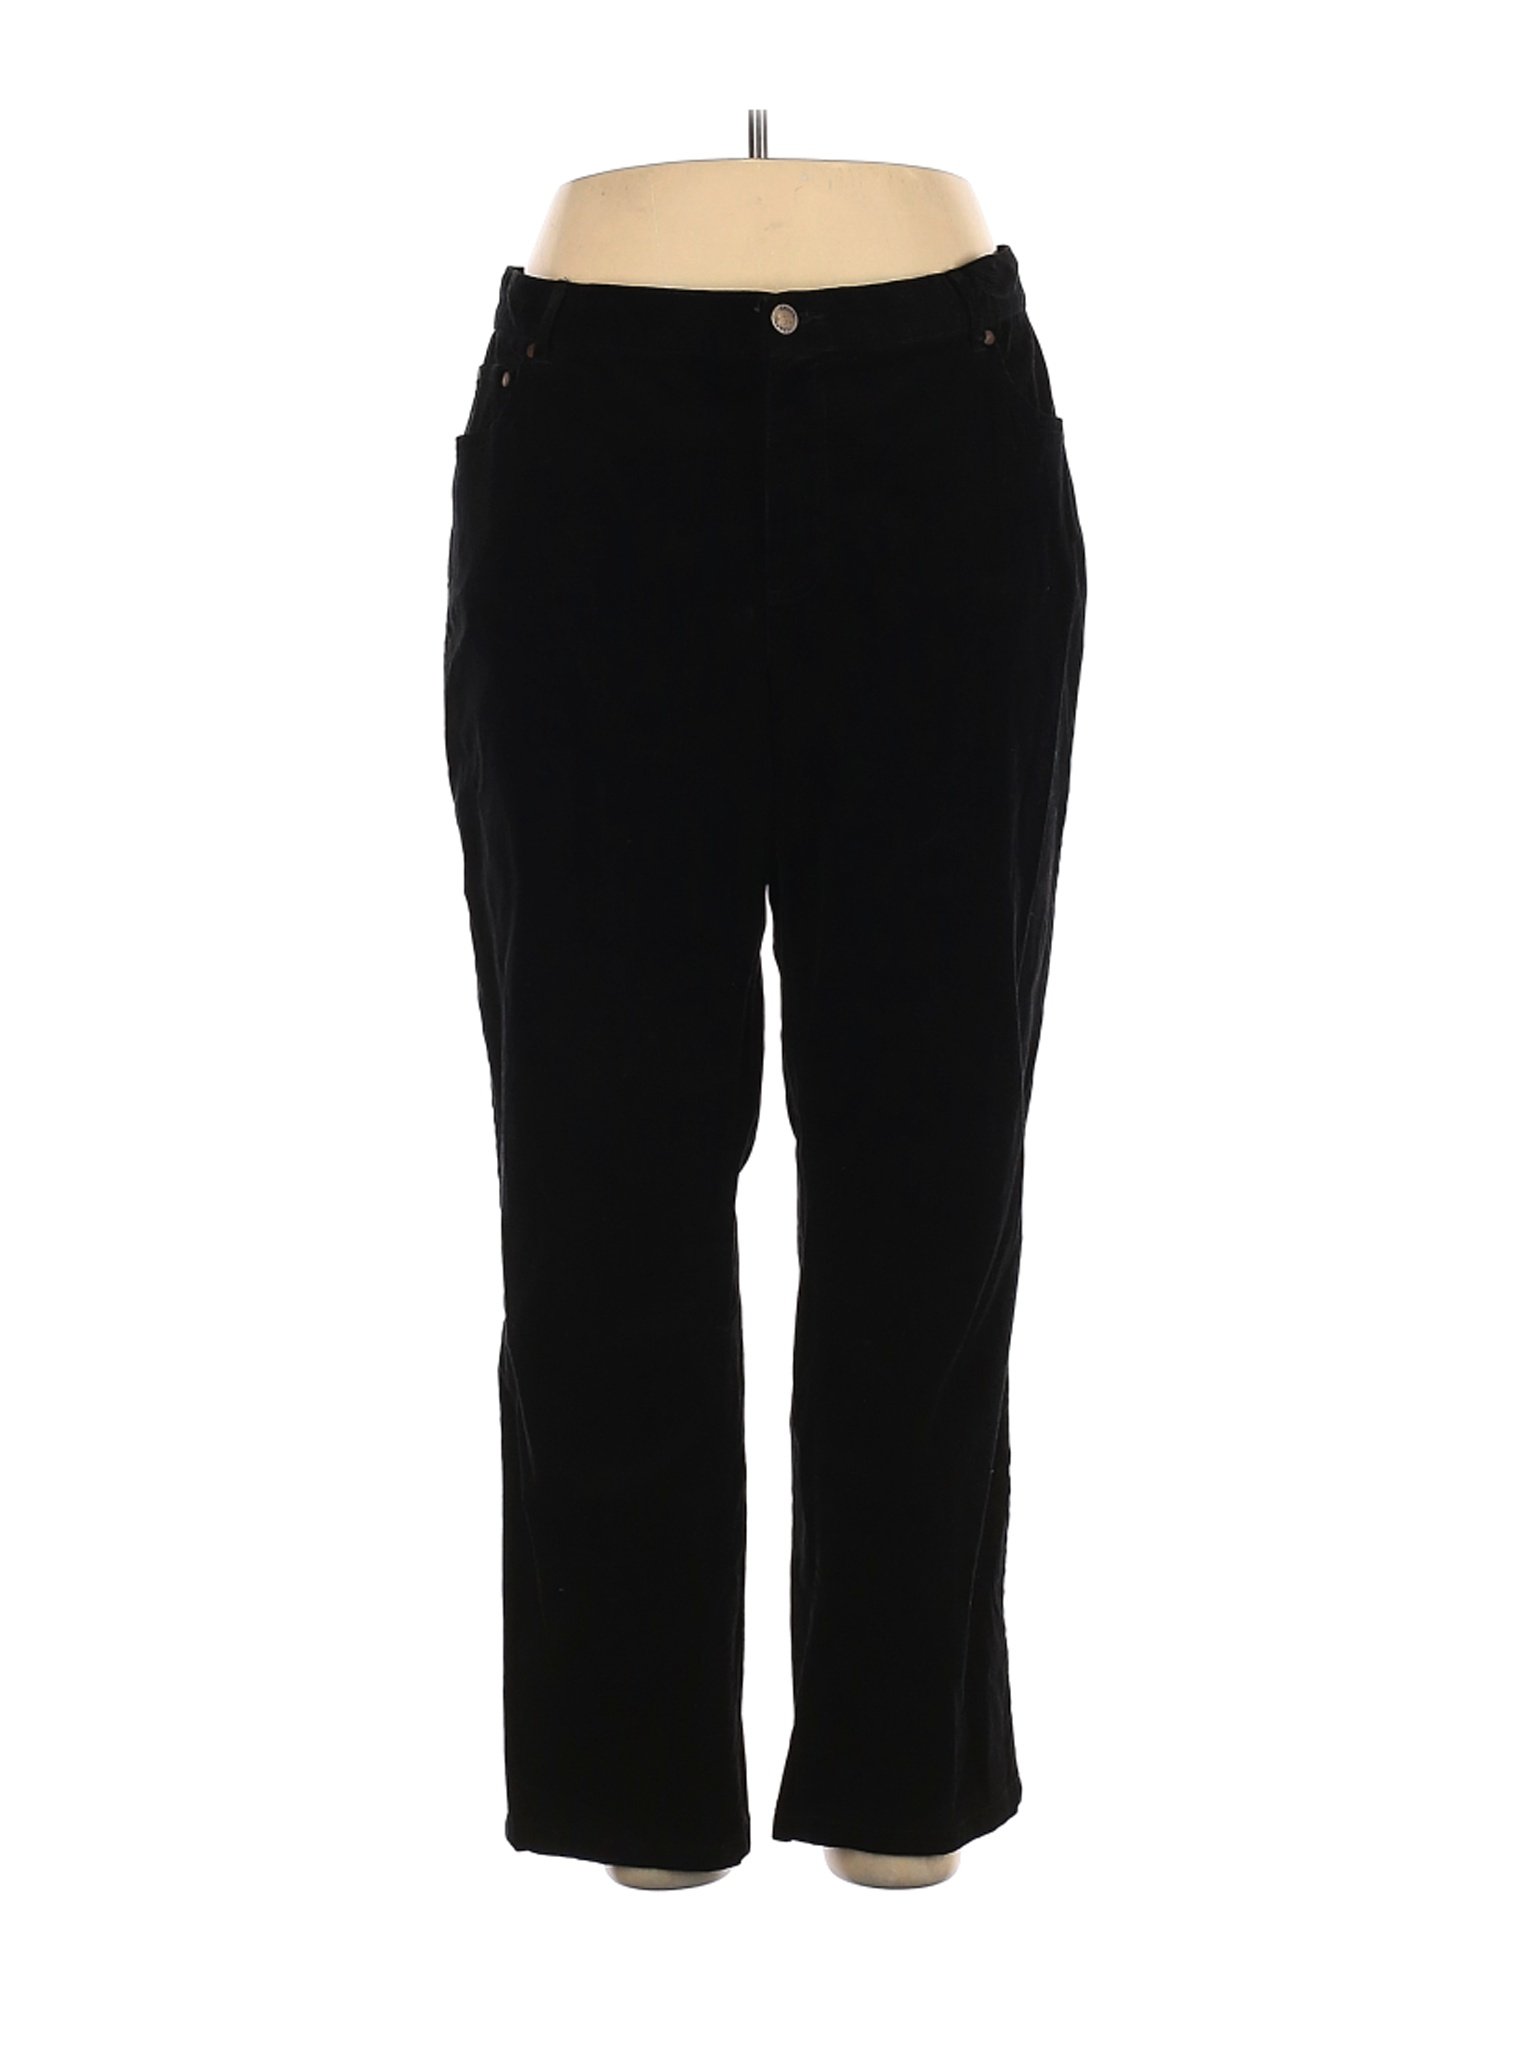 Chaps Women Black Velour Pants 18 Plus | eBay